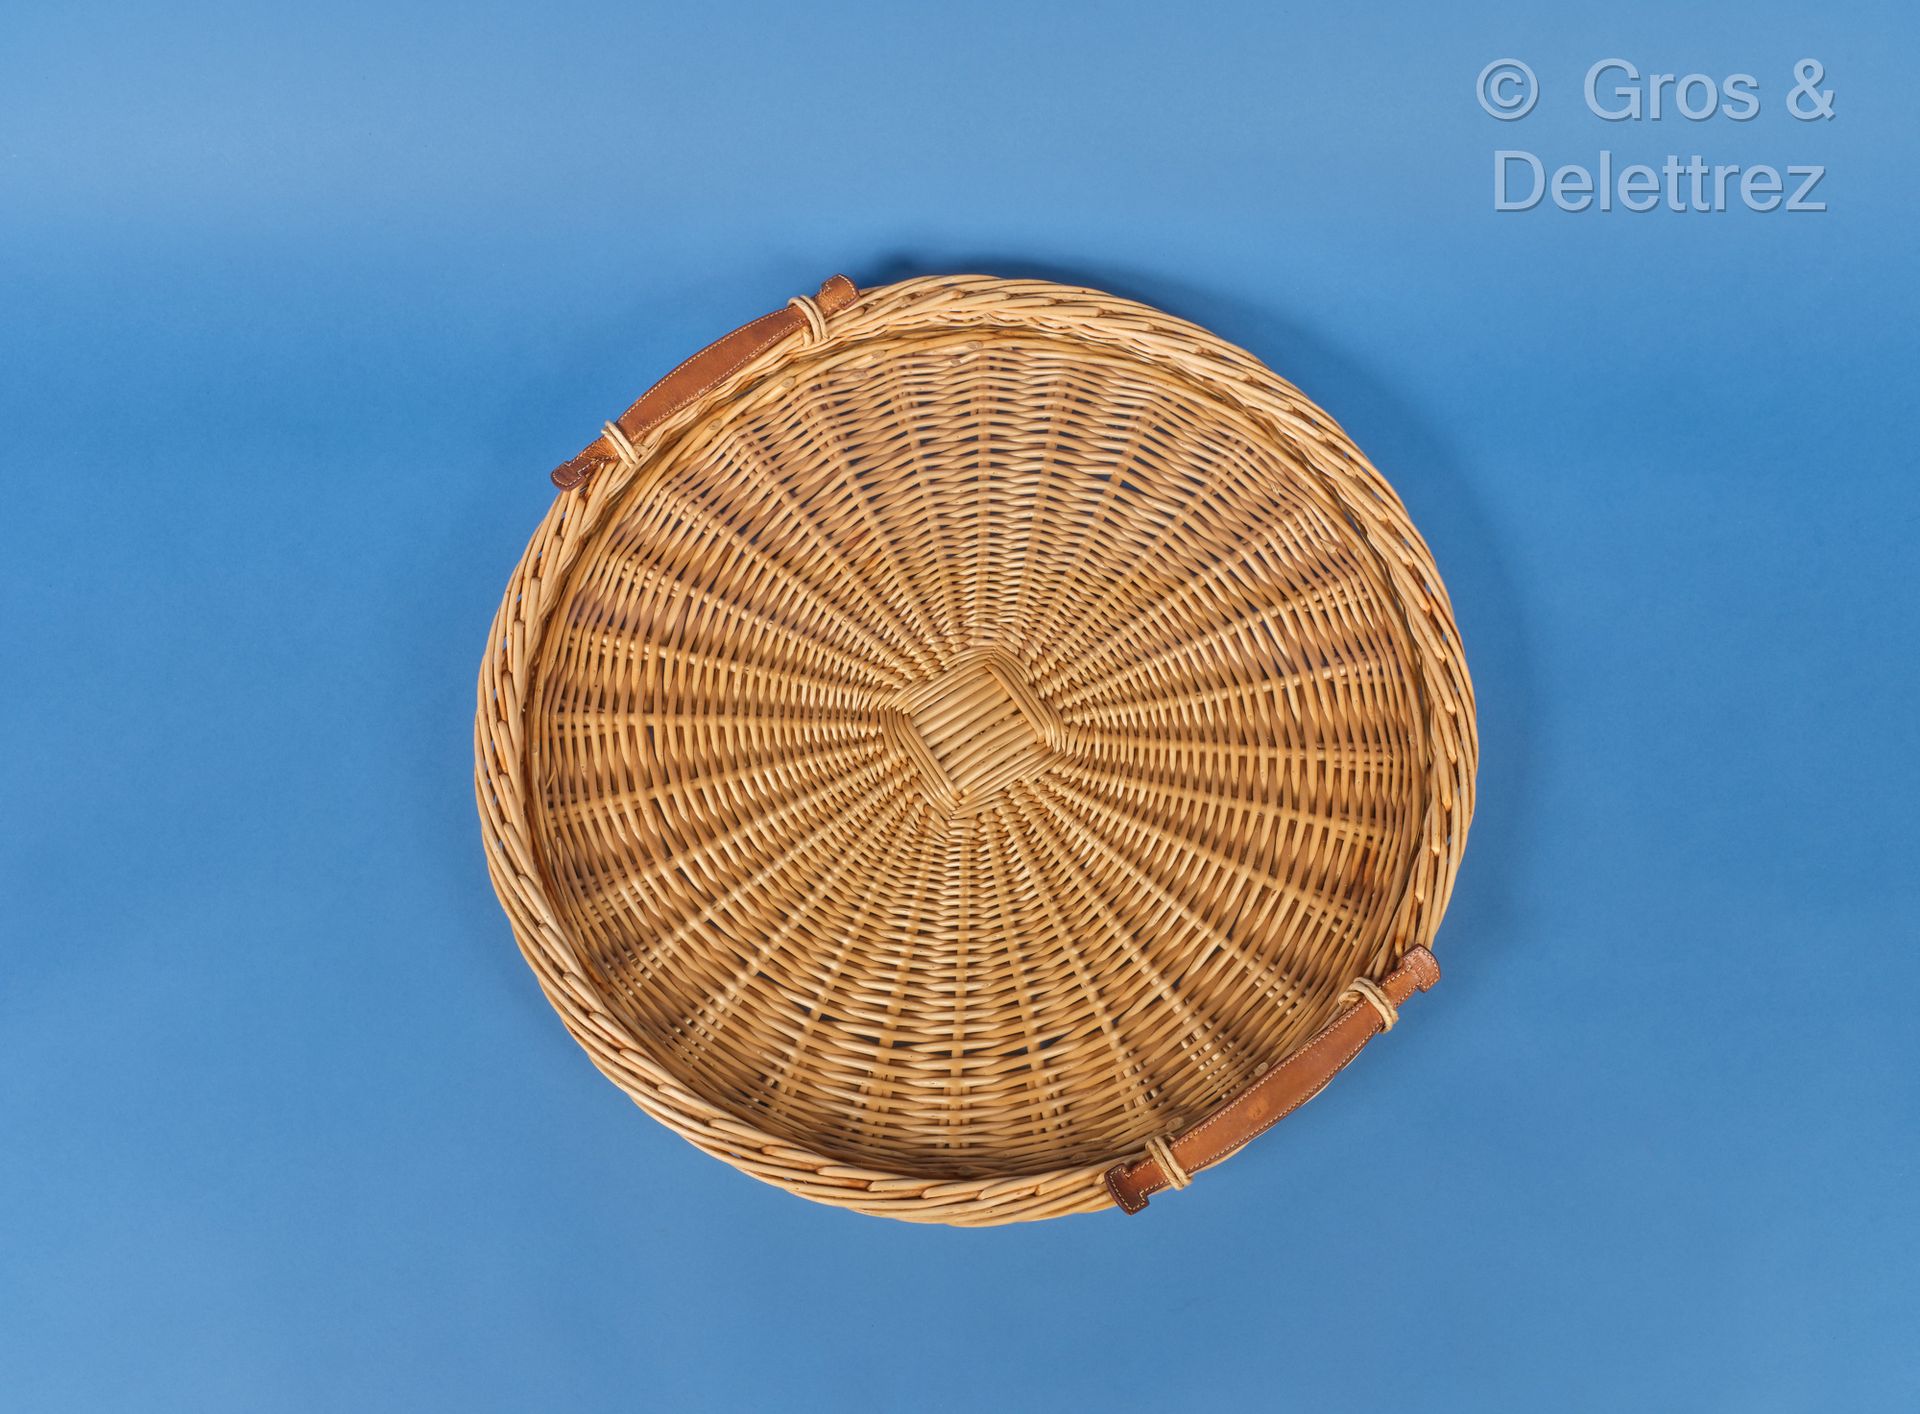 Null 巴黎爱马仕 - 圆形柳条托盘，上面有一个玻璃，天然皮革手柄。尺寸：52厘米。(磨损，痕迹，污渍）。